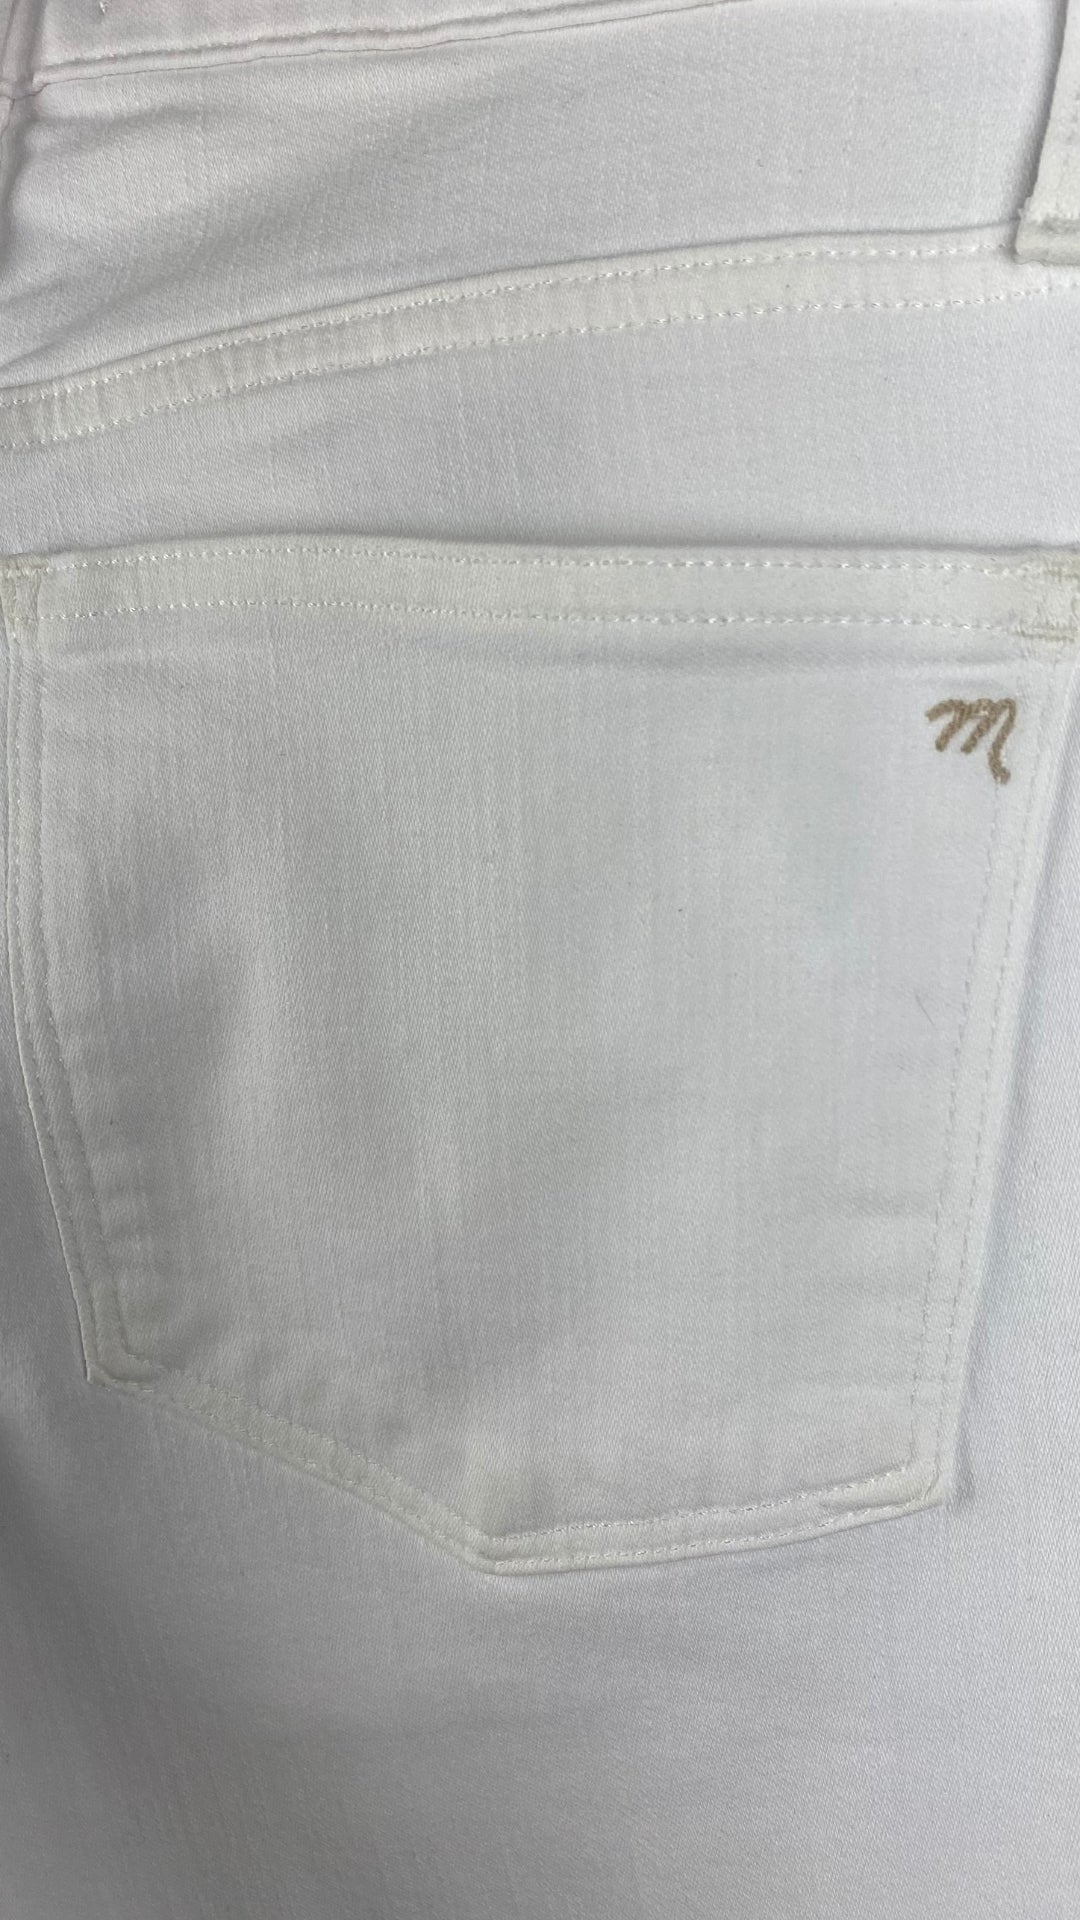 Pantalon blanc légèrement évasé Madewell, taille 28. Vue de la poche arrière.